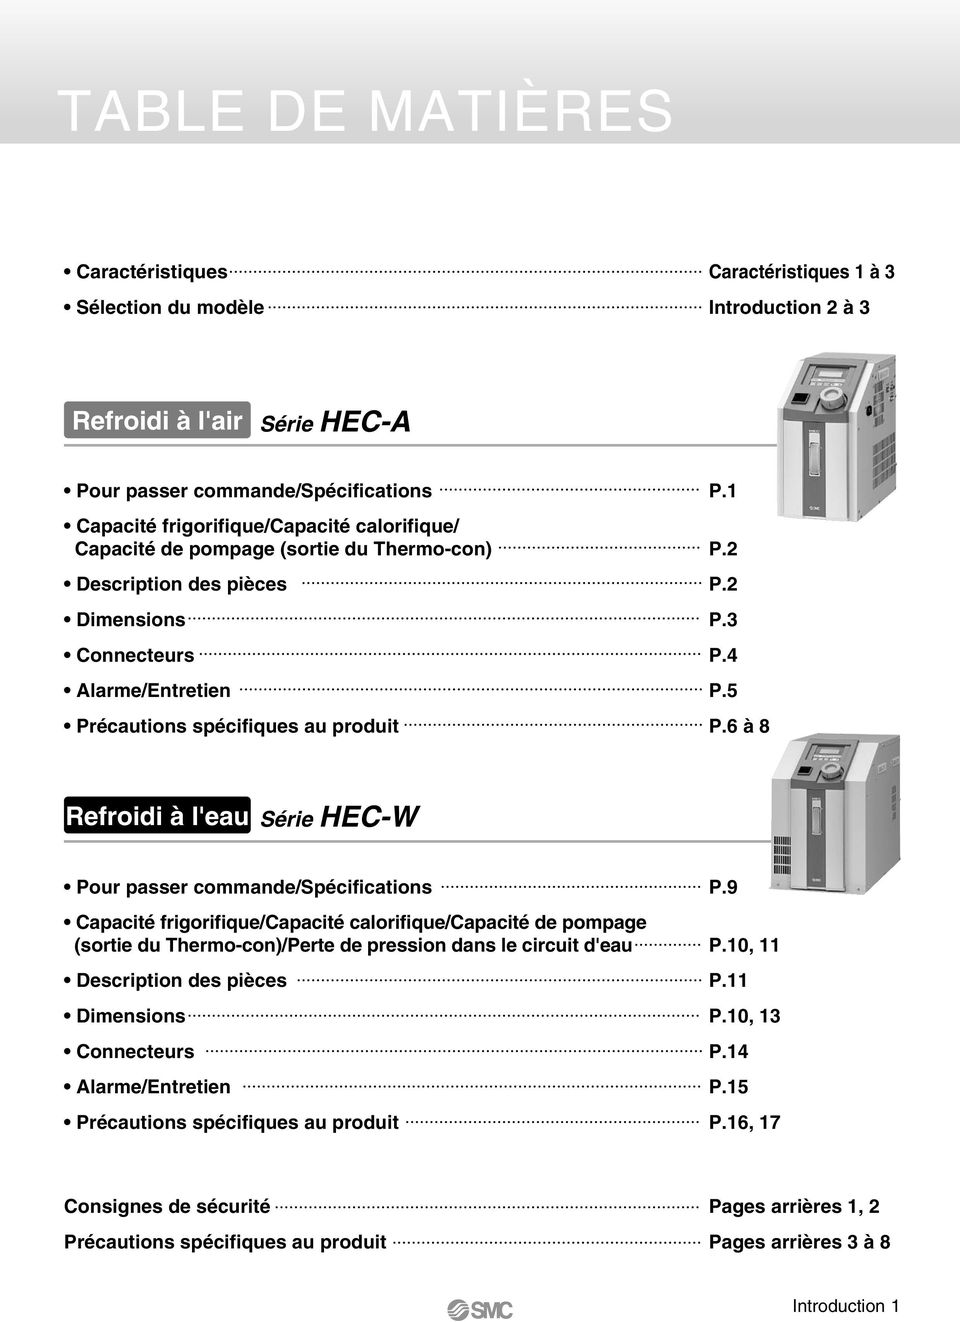 6 à 8 Refroidi à l'eau Série HEC-W Pour passer commande/spécifications Capacité frigorifique/capacité calorifique/capacité de pompage (sortie du Thermo-con)/Perte de pression dans le circuit d'eau